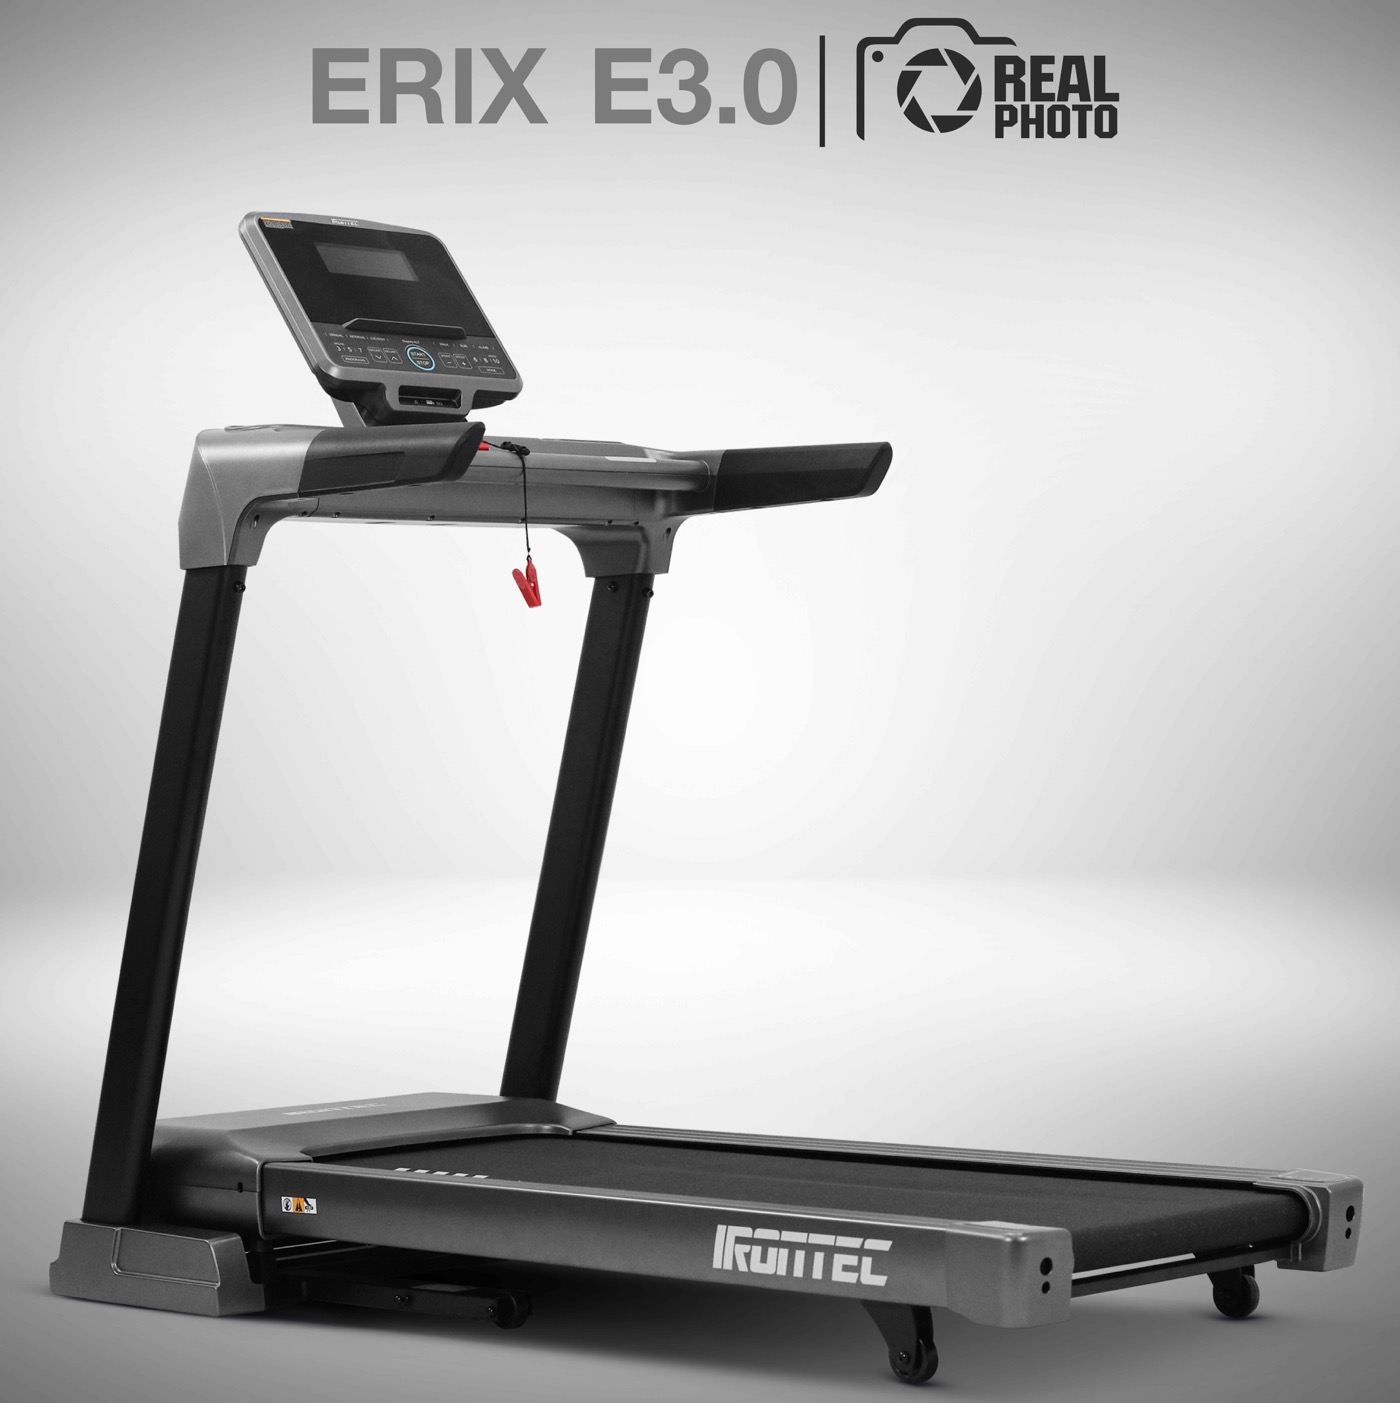 ลู่วิ่งไฟฟ้า IRONTEC รุ่น ERIX E3.0